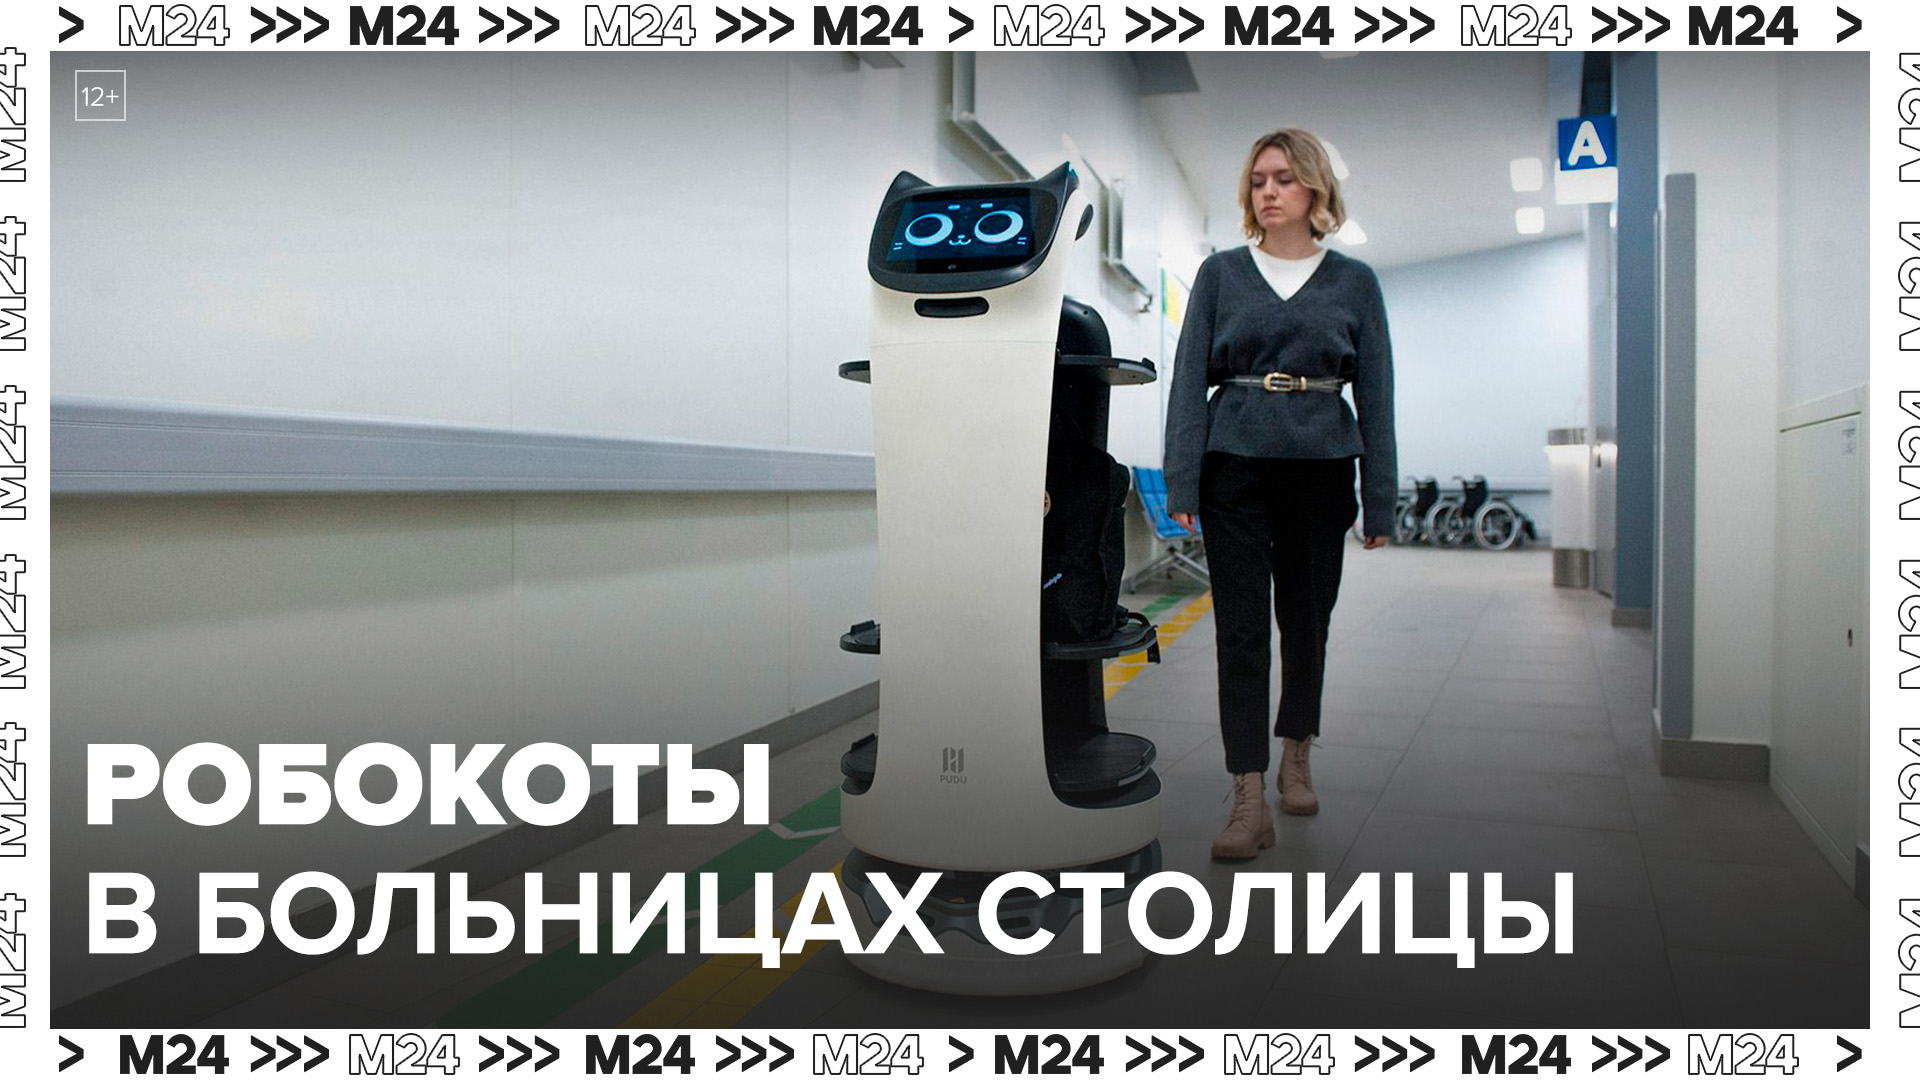 Почти 30 тыс заданий выполнили робокоты в столичных больницах: "Актуальный репортаж" - Москва 24